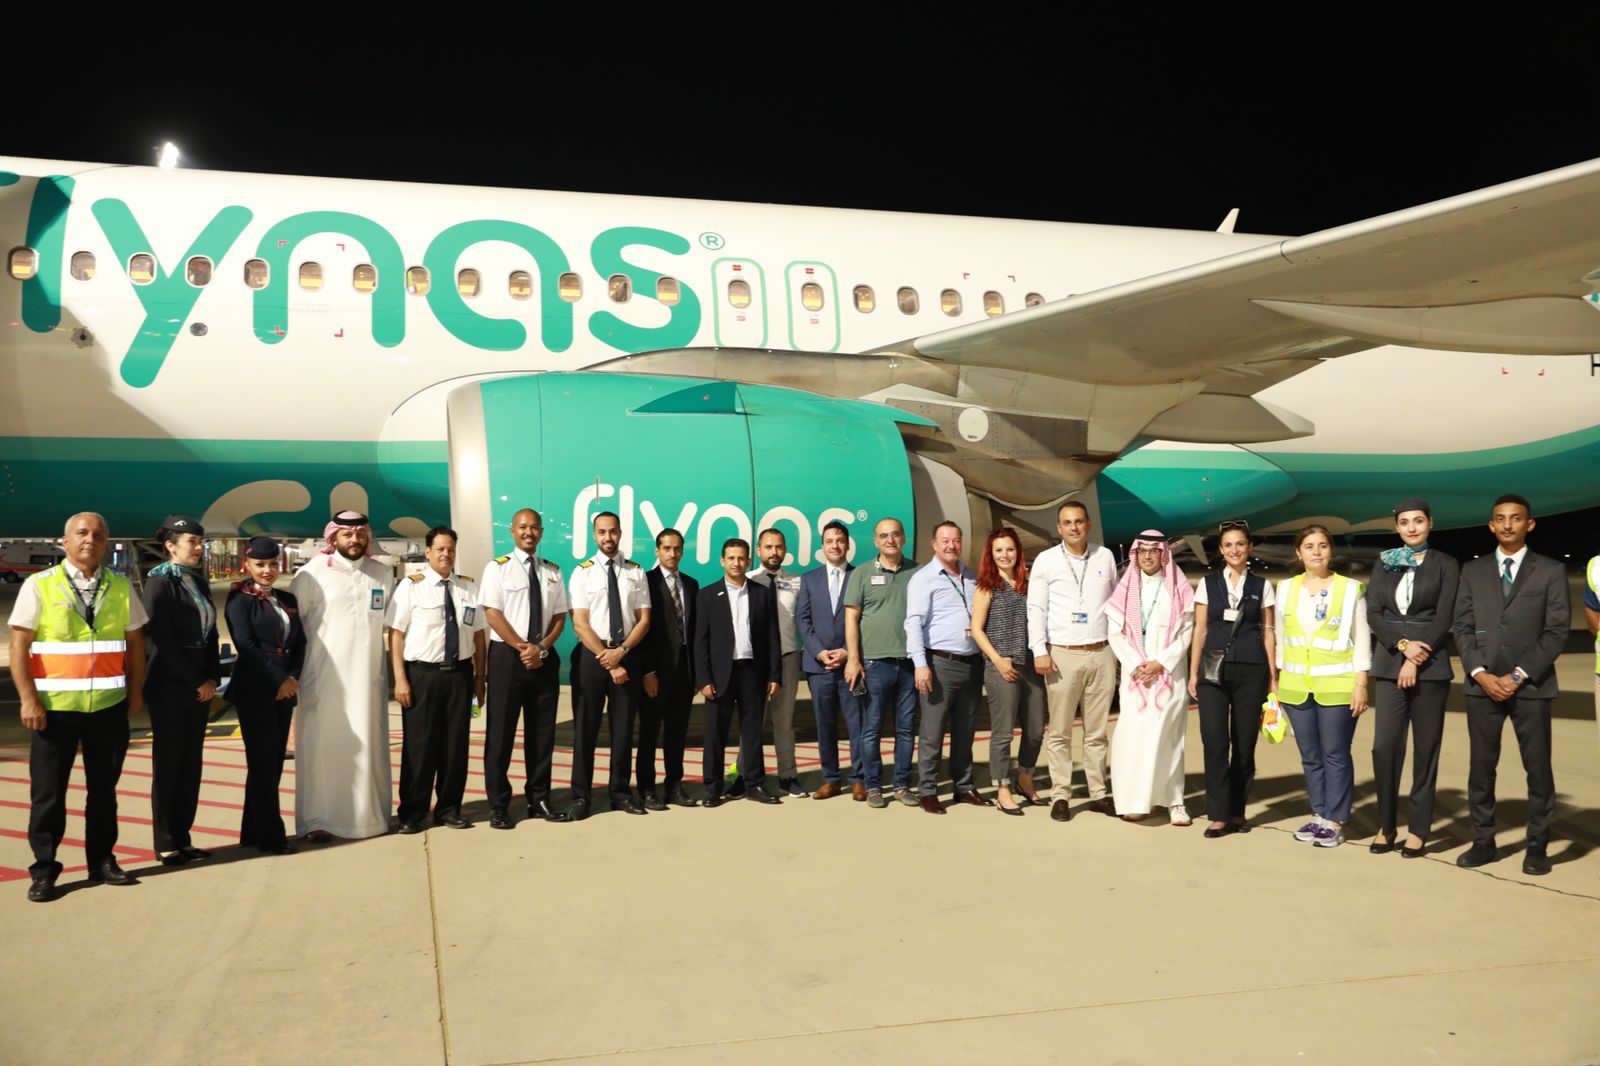 طيران ناس يحتفل بتدشين أولى رحلاته المباشرة بين الرياض وبودروم التركية